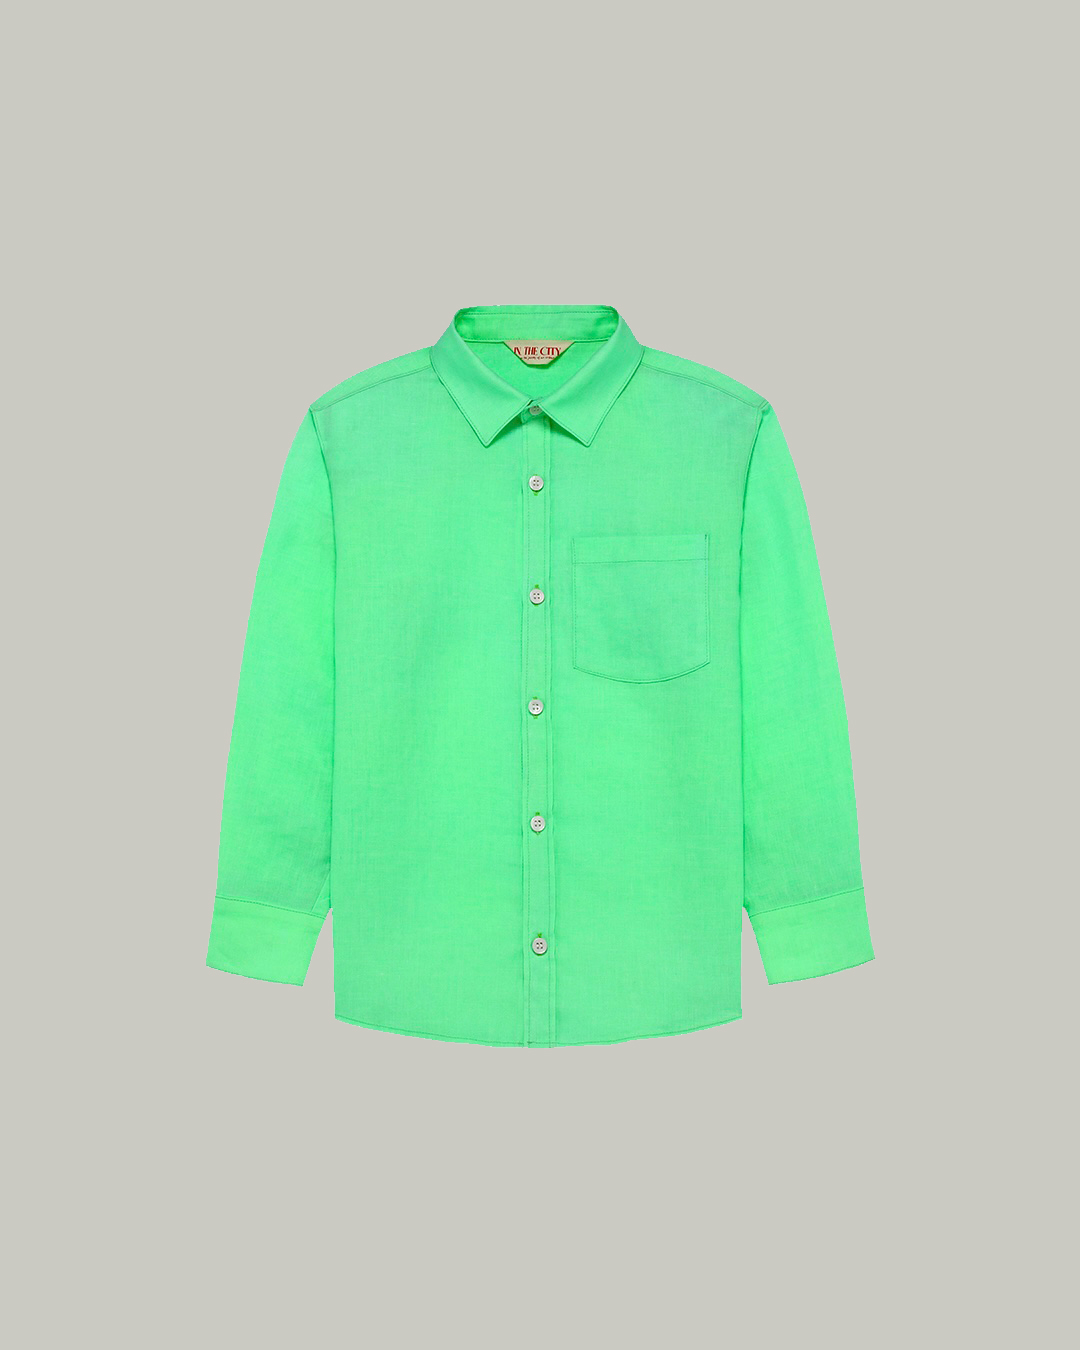 (sold out) Green Linen Shirt